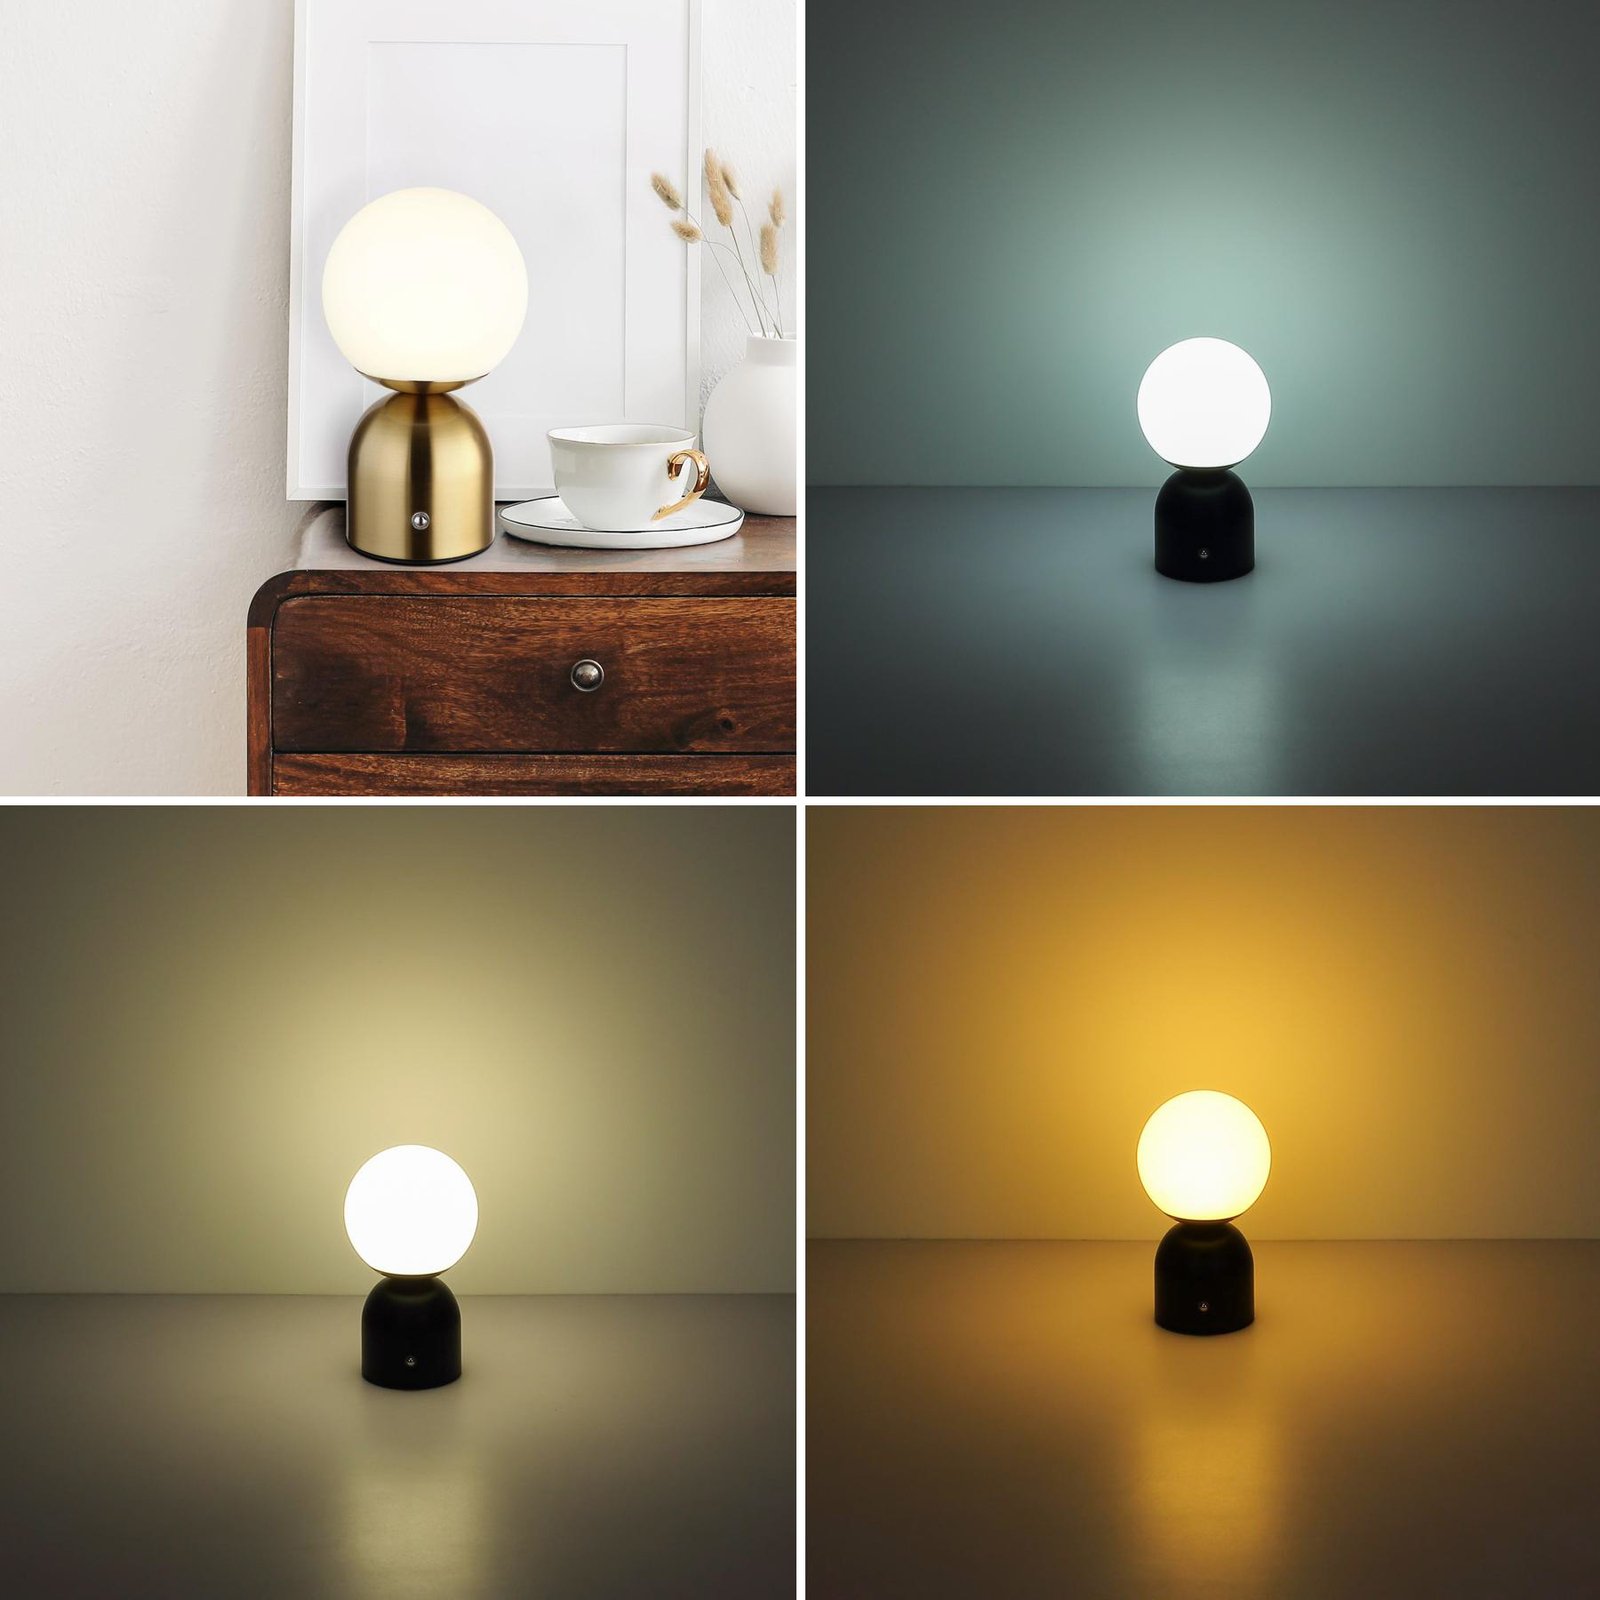 Stolní lampa Julsy LED s dobíjením, mosazná barva, výška 21 cm, CCT